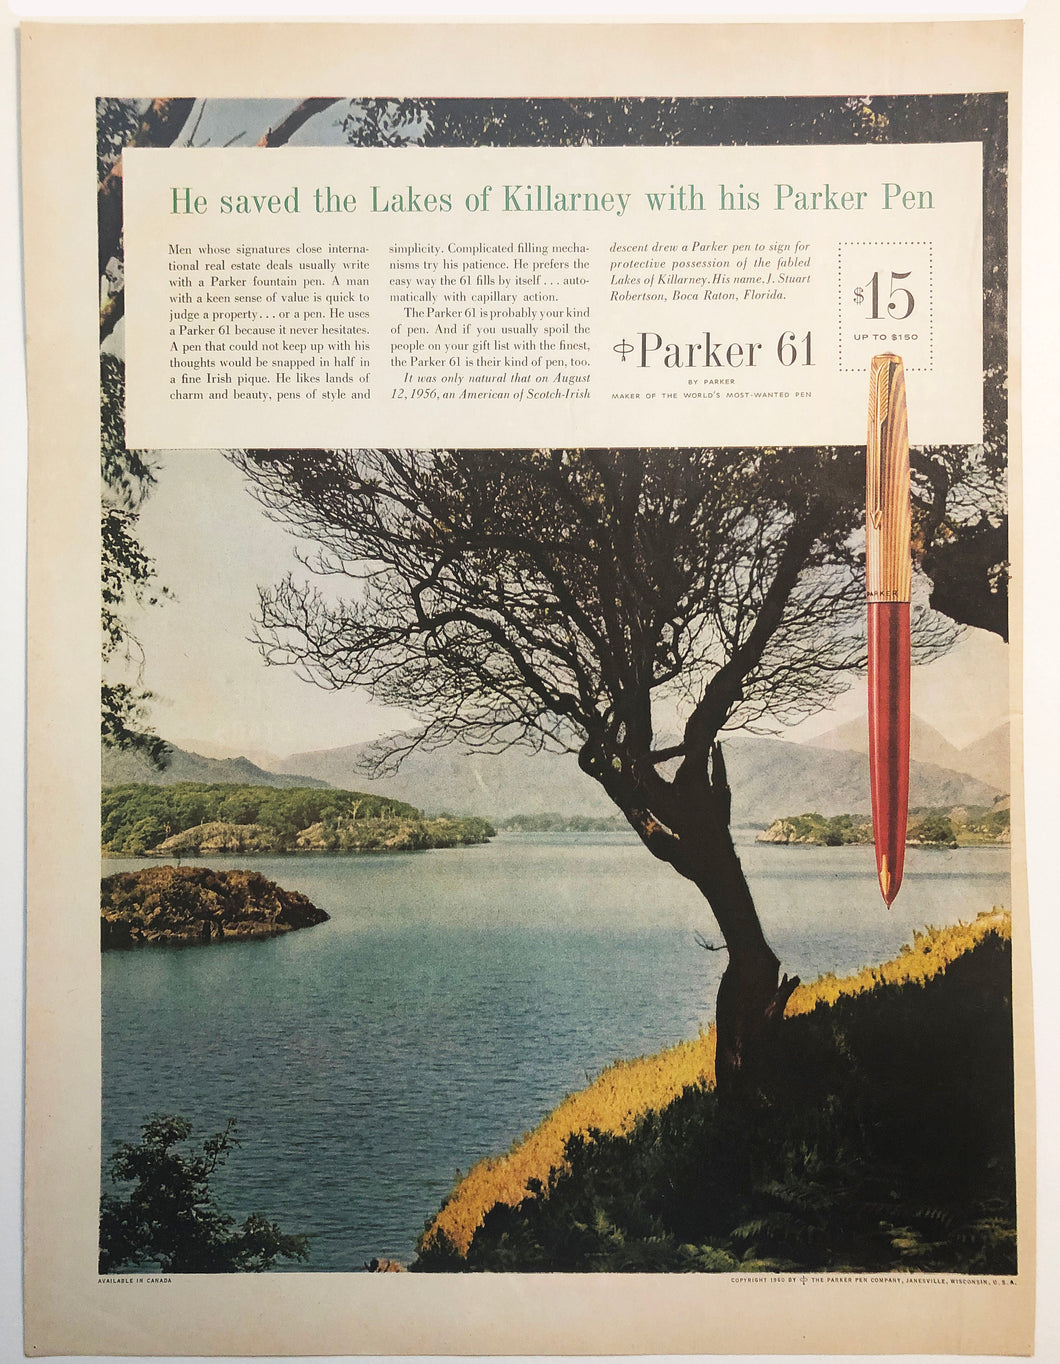 Parker 61, Life Magazine, copr. 1960